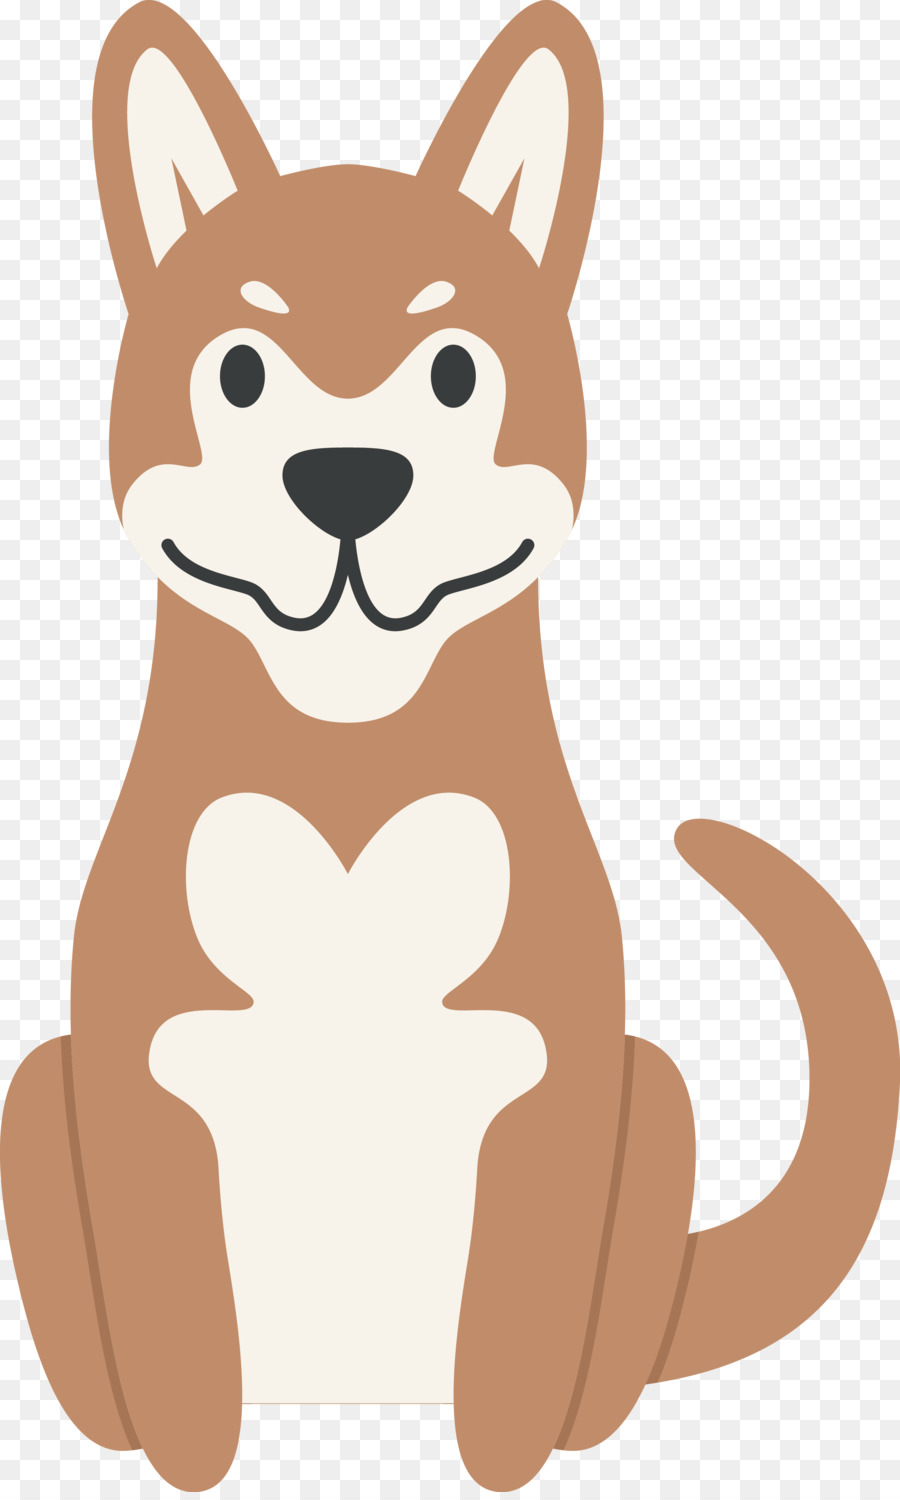 Cucciolo Bulldog Baffi del Cane di razza Illustrazione - Vector carino cucciolo